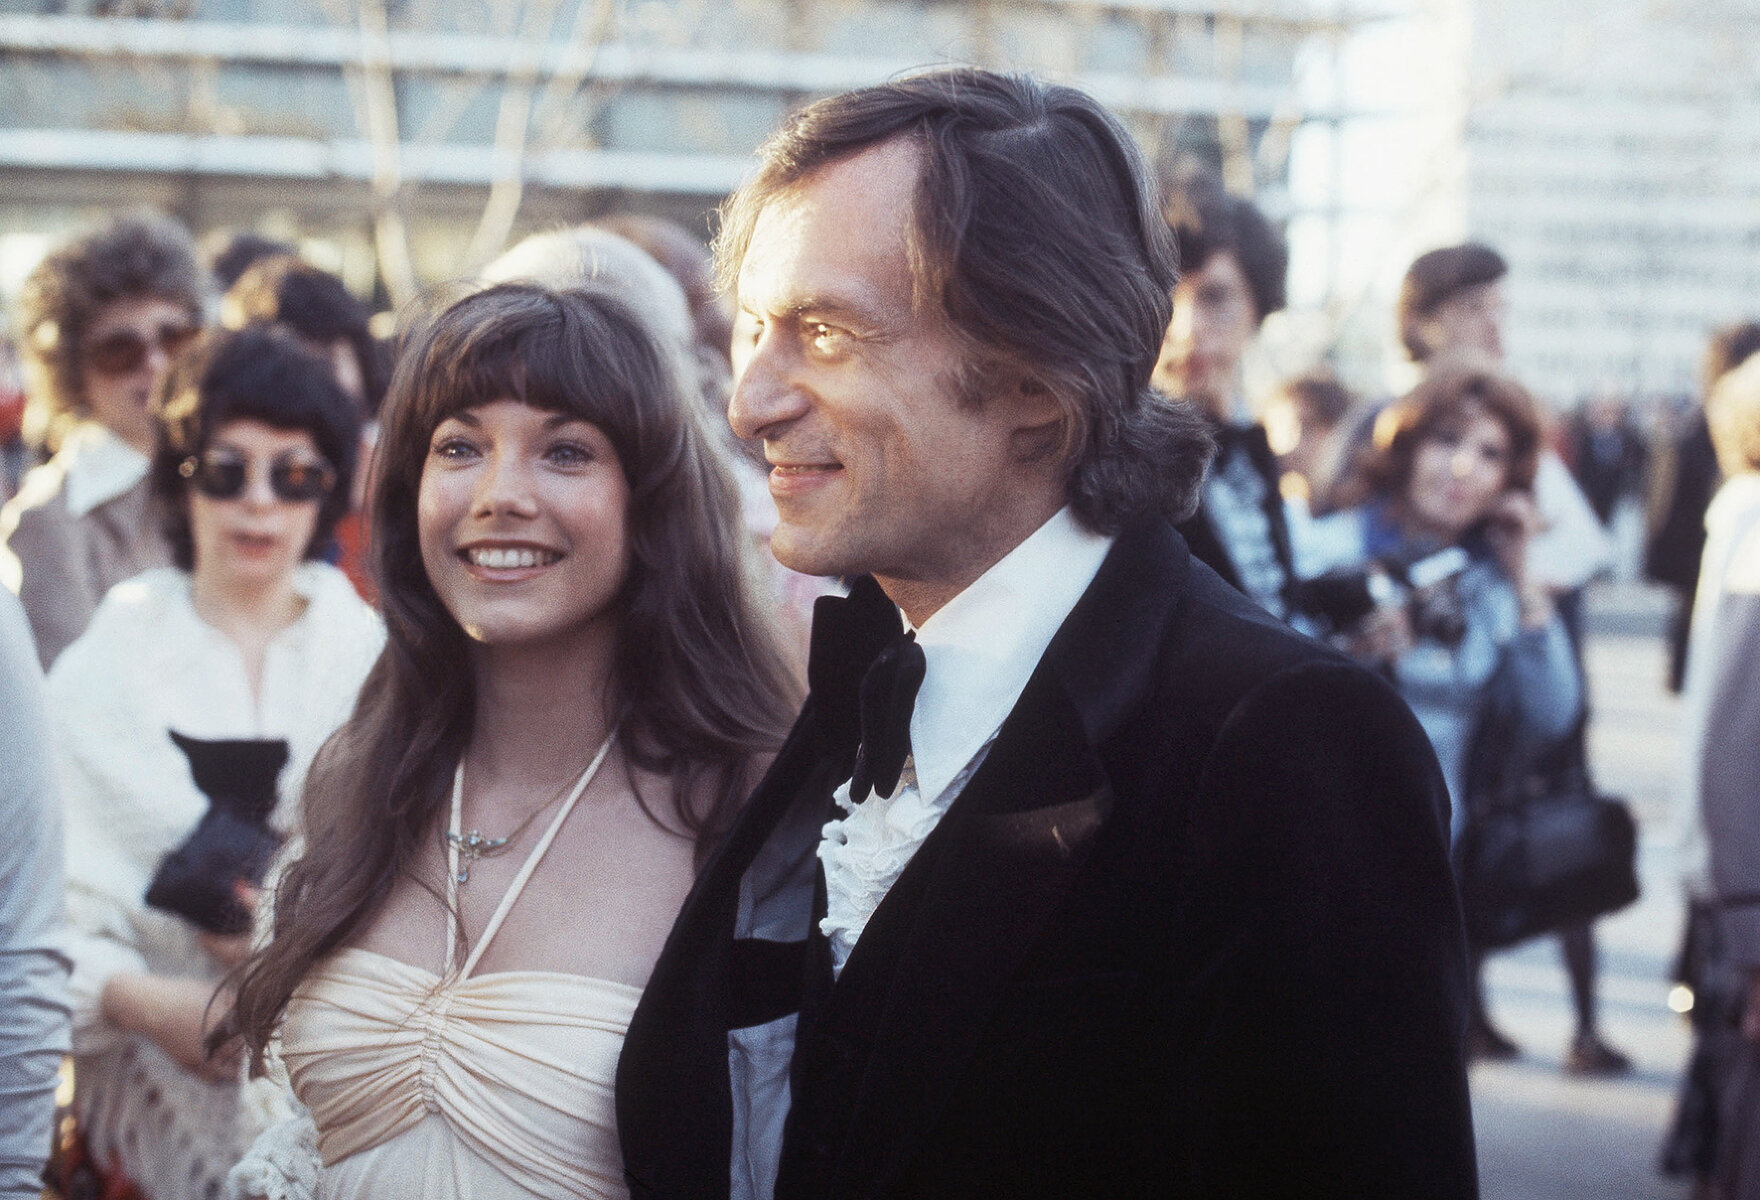 <p>Хью Хефнер на ежегодной премии Киноакадемии в Голливуде с актрисой Барби Бентон, 1973 год.</p>

<p>&nbsp;</p>